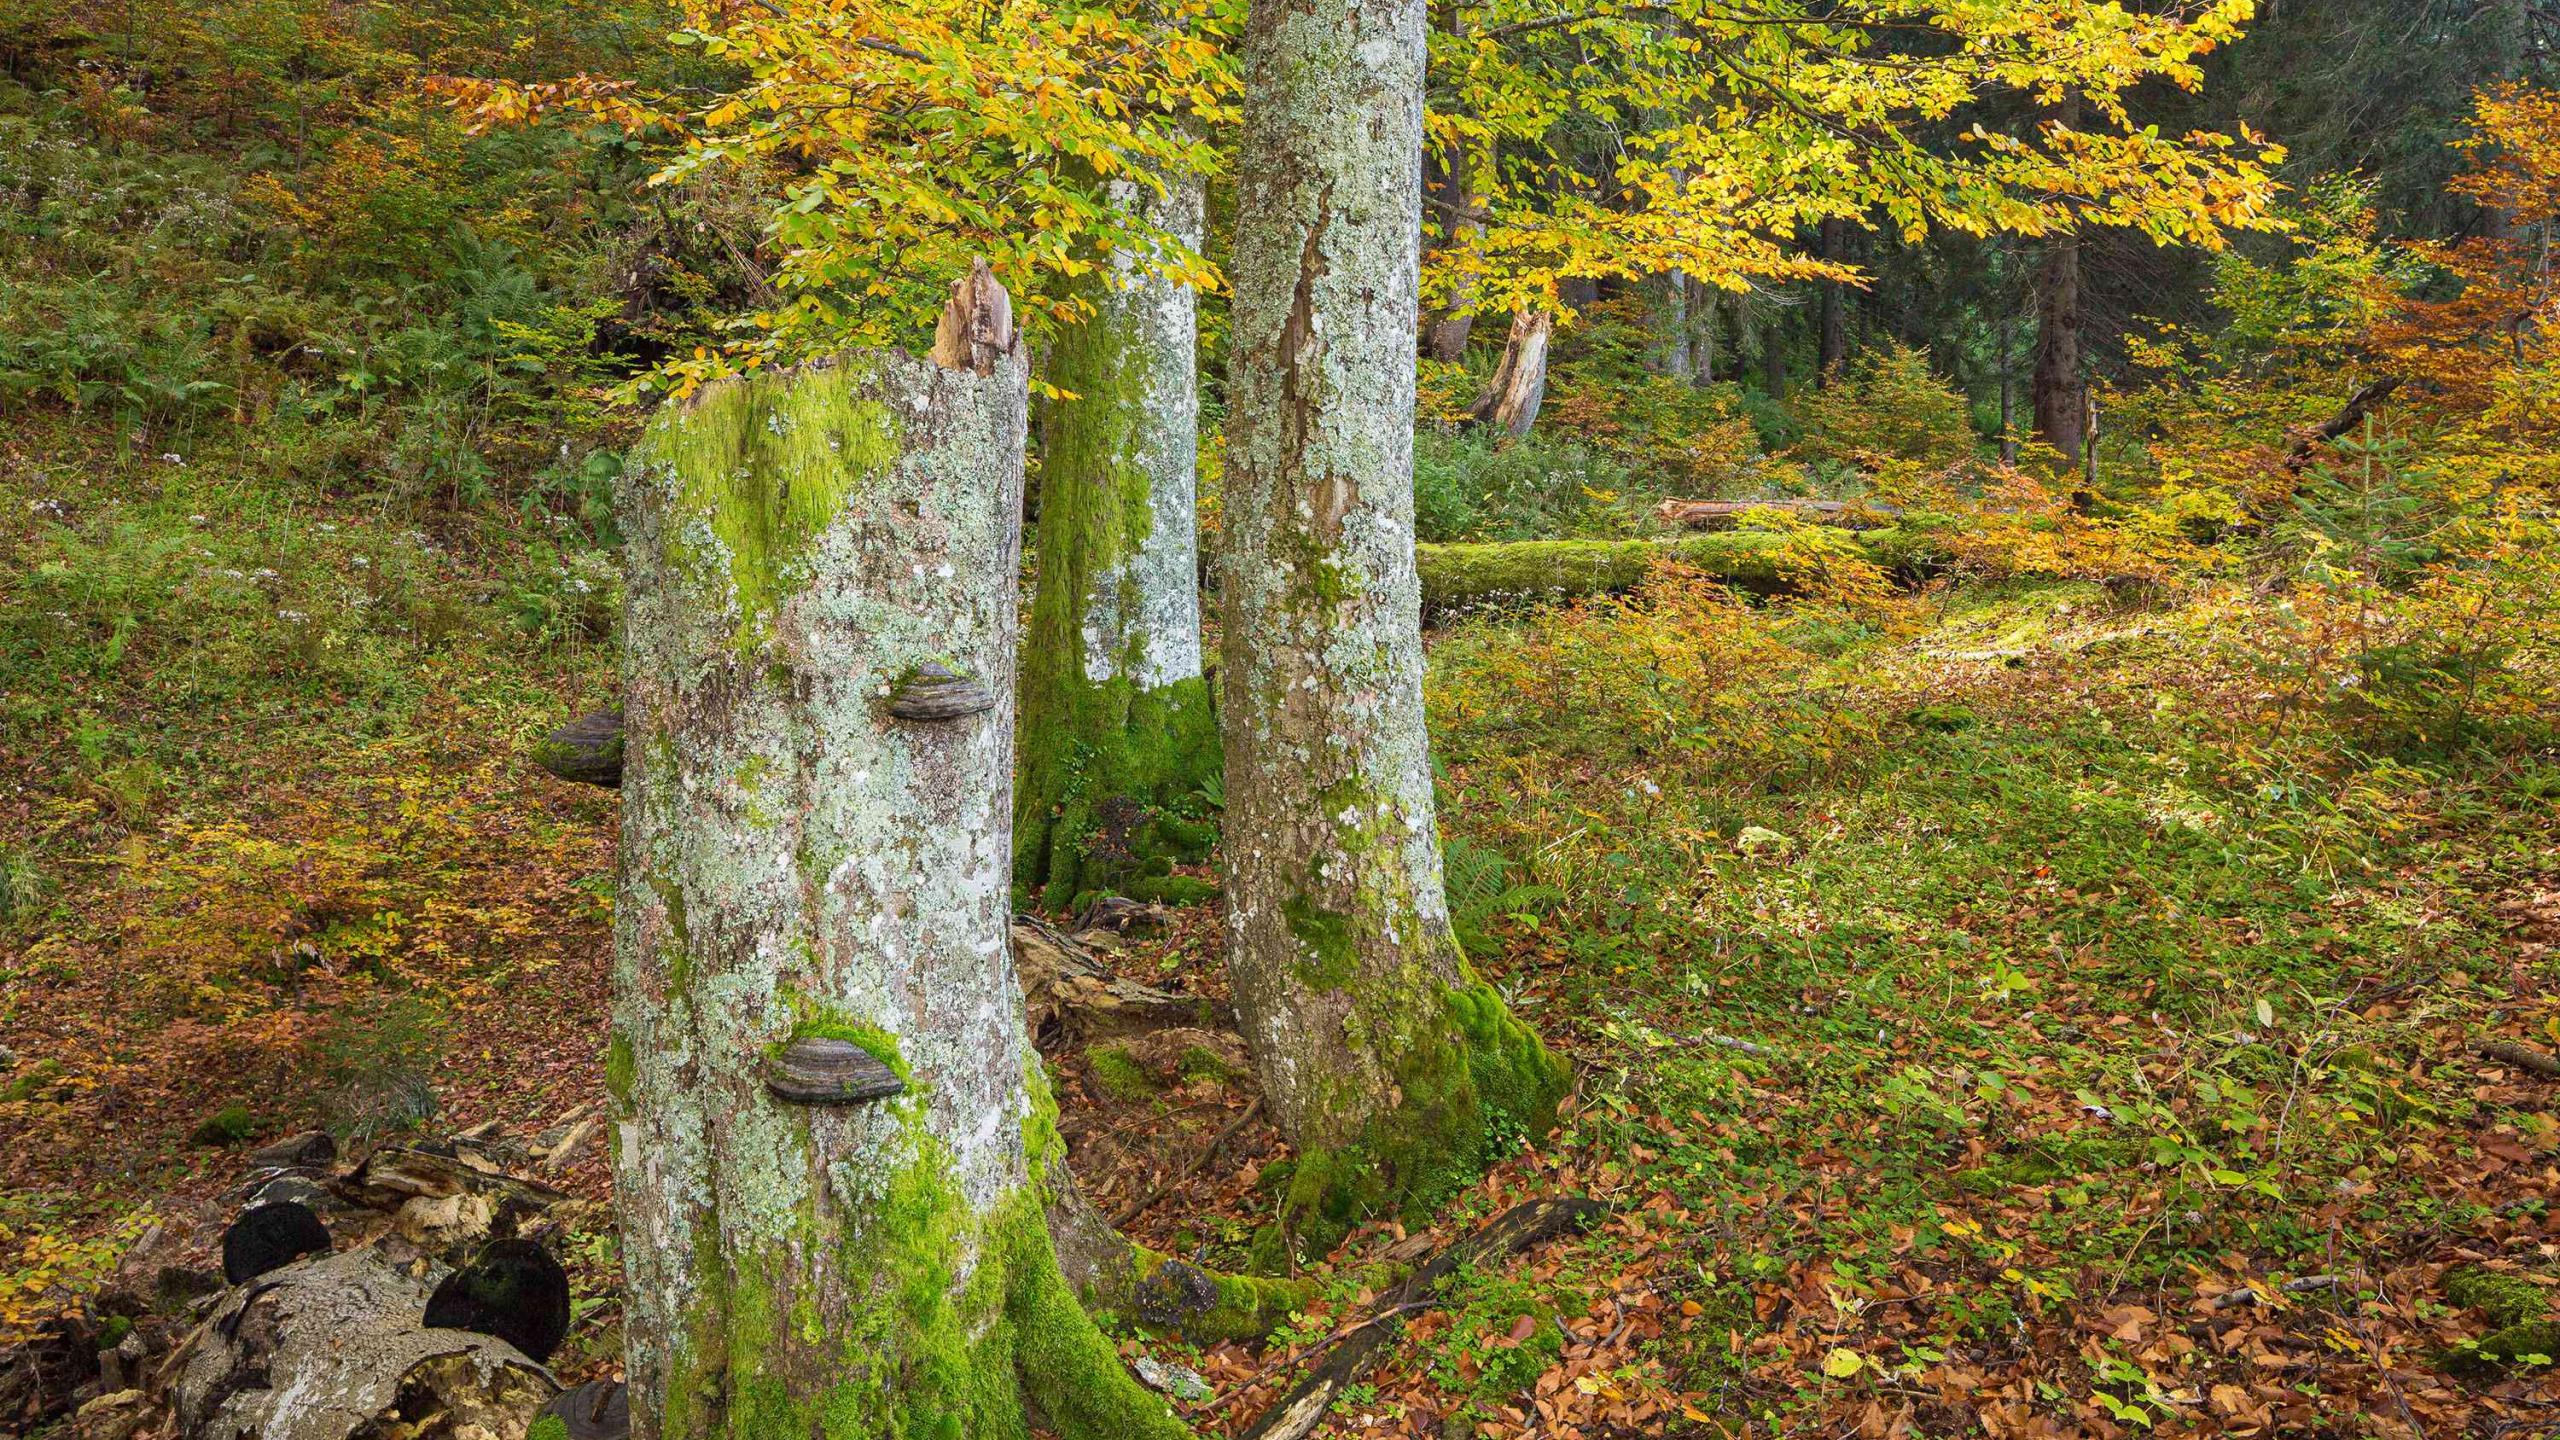 Herbstlicher Buchenwald mit gelb - grün - orange gefärbten Blättern, im Vordergrund stehendes Totholz mit Pilzen